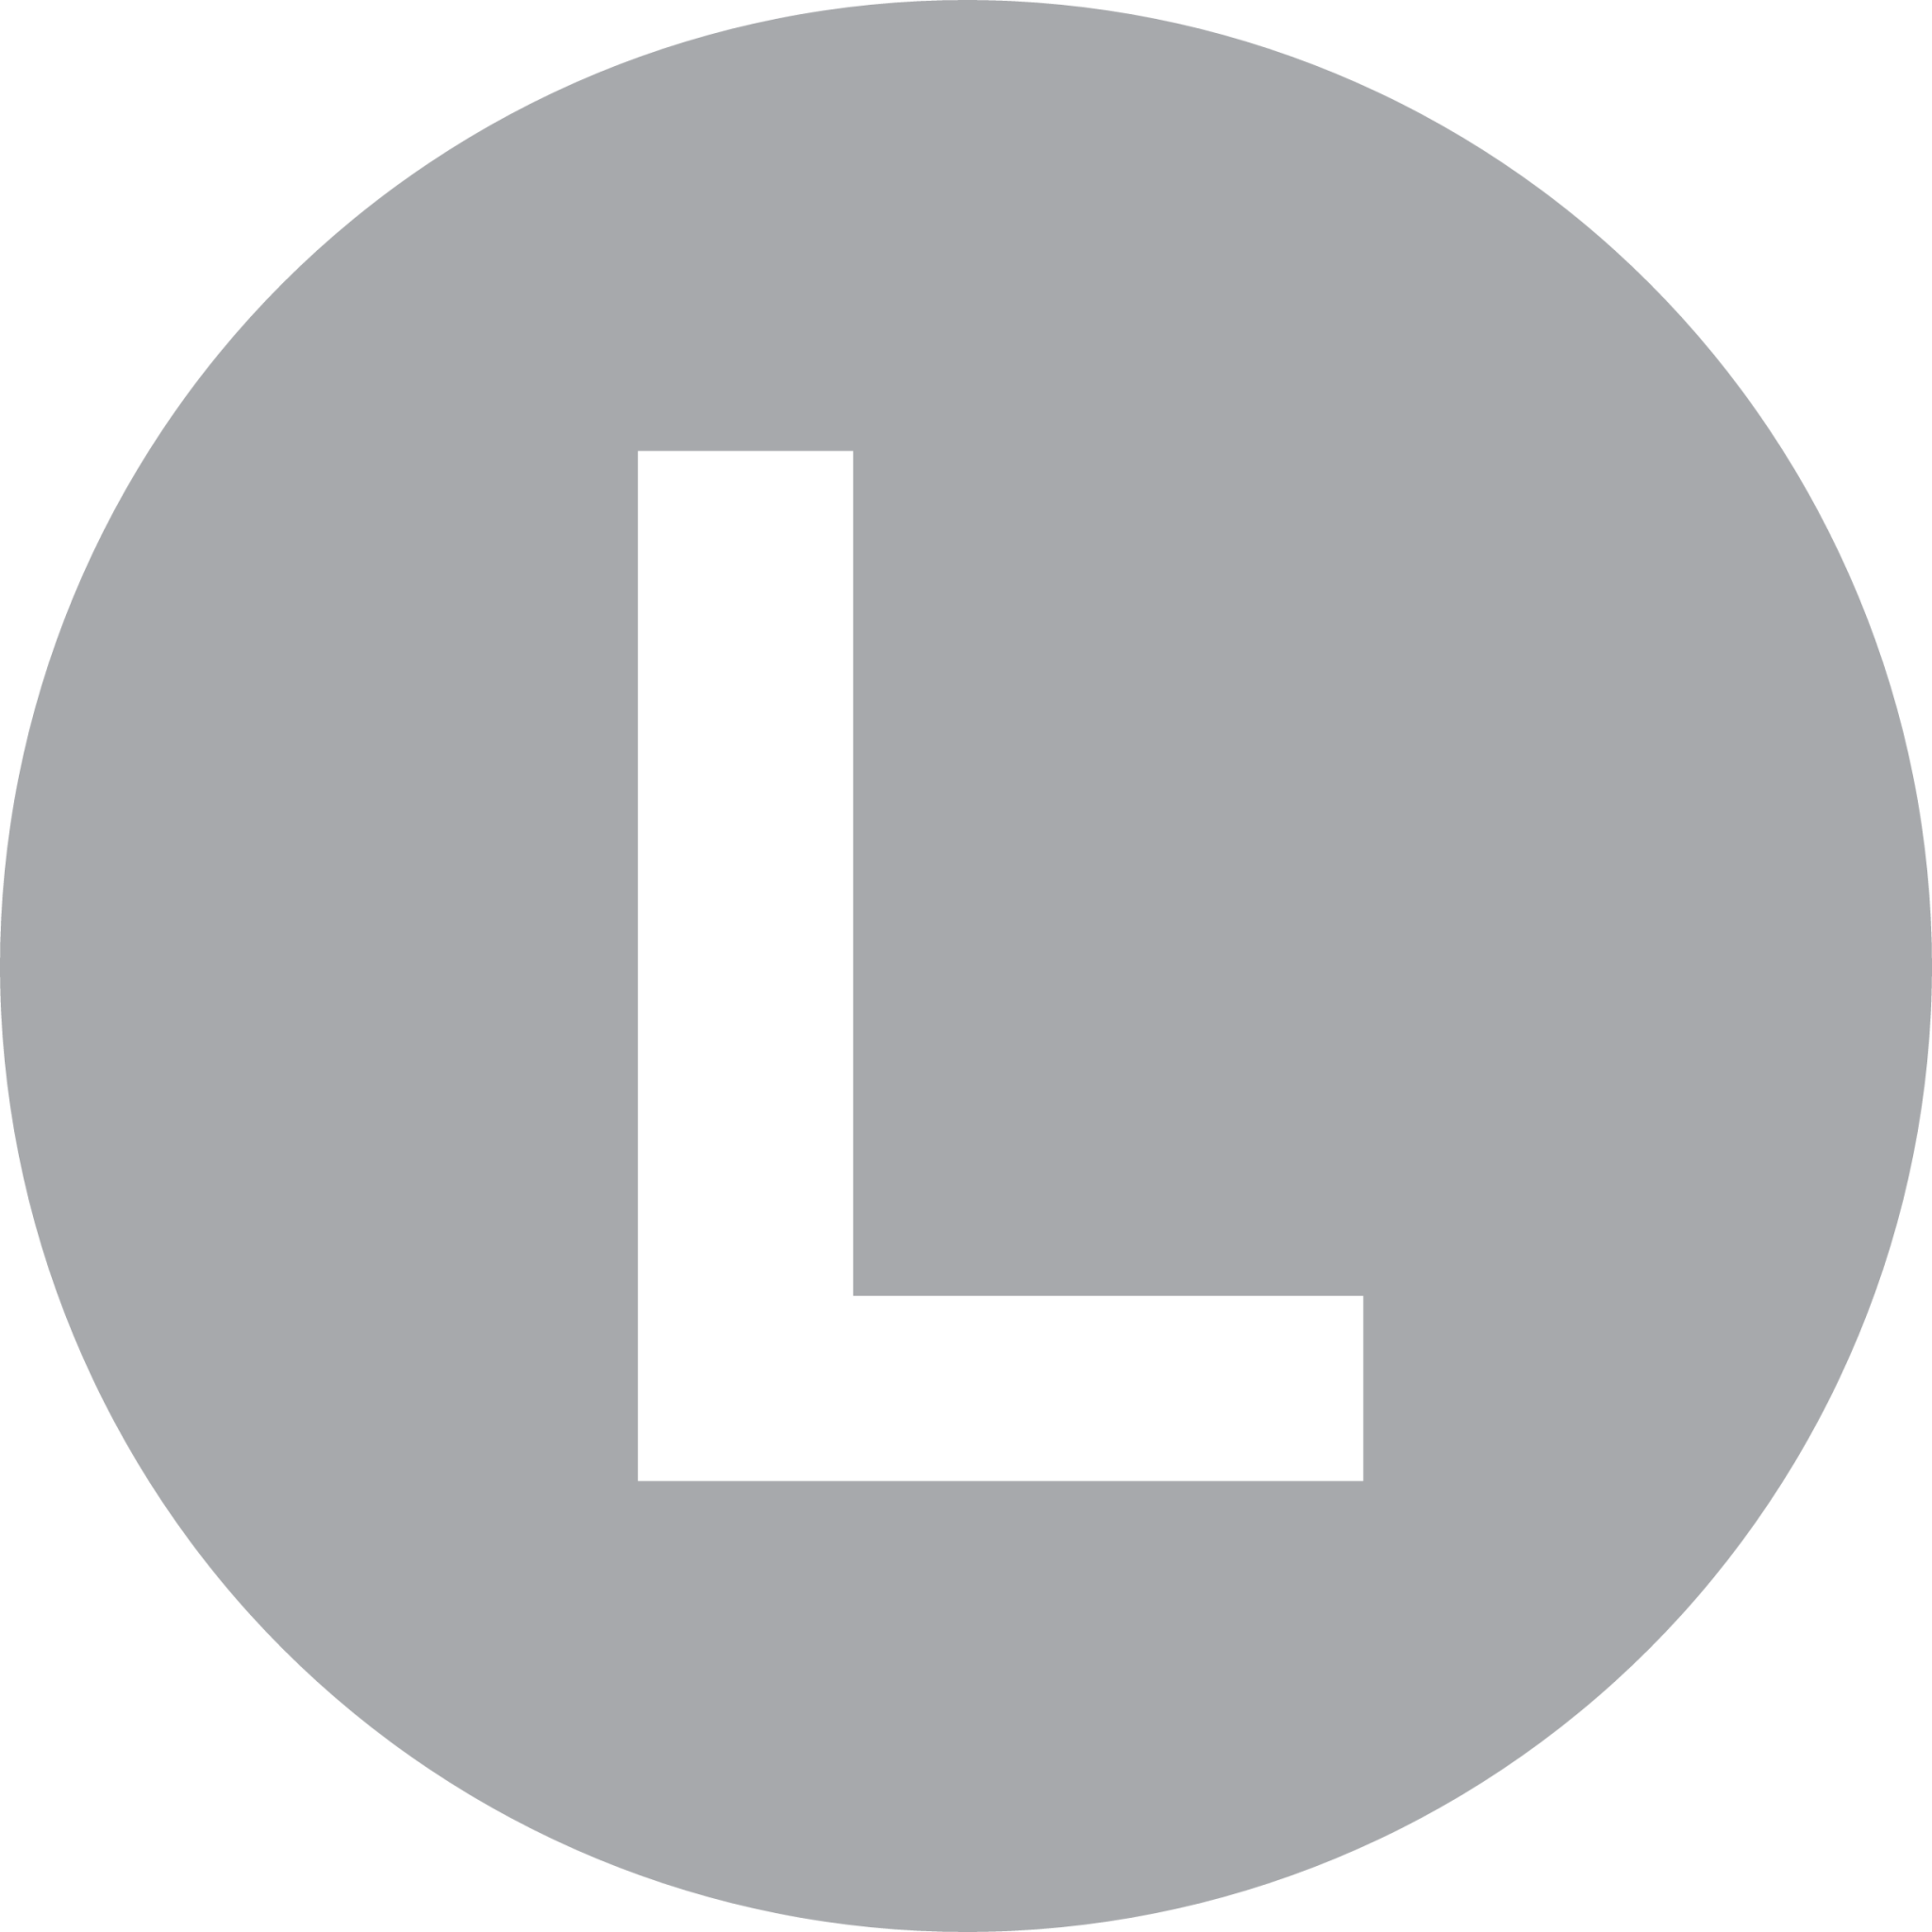 l letter icon